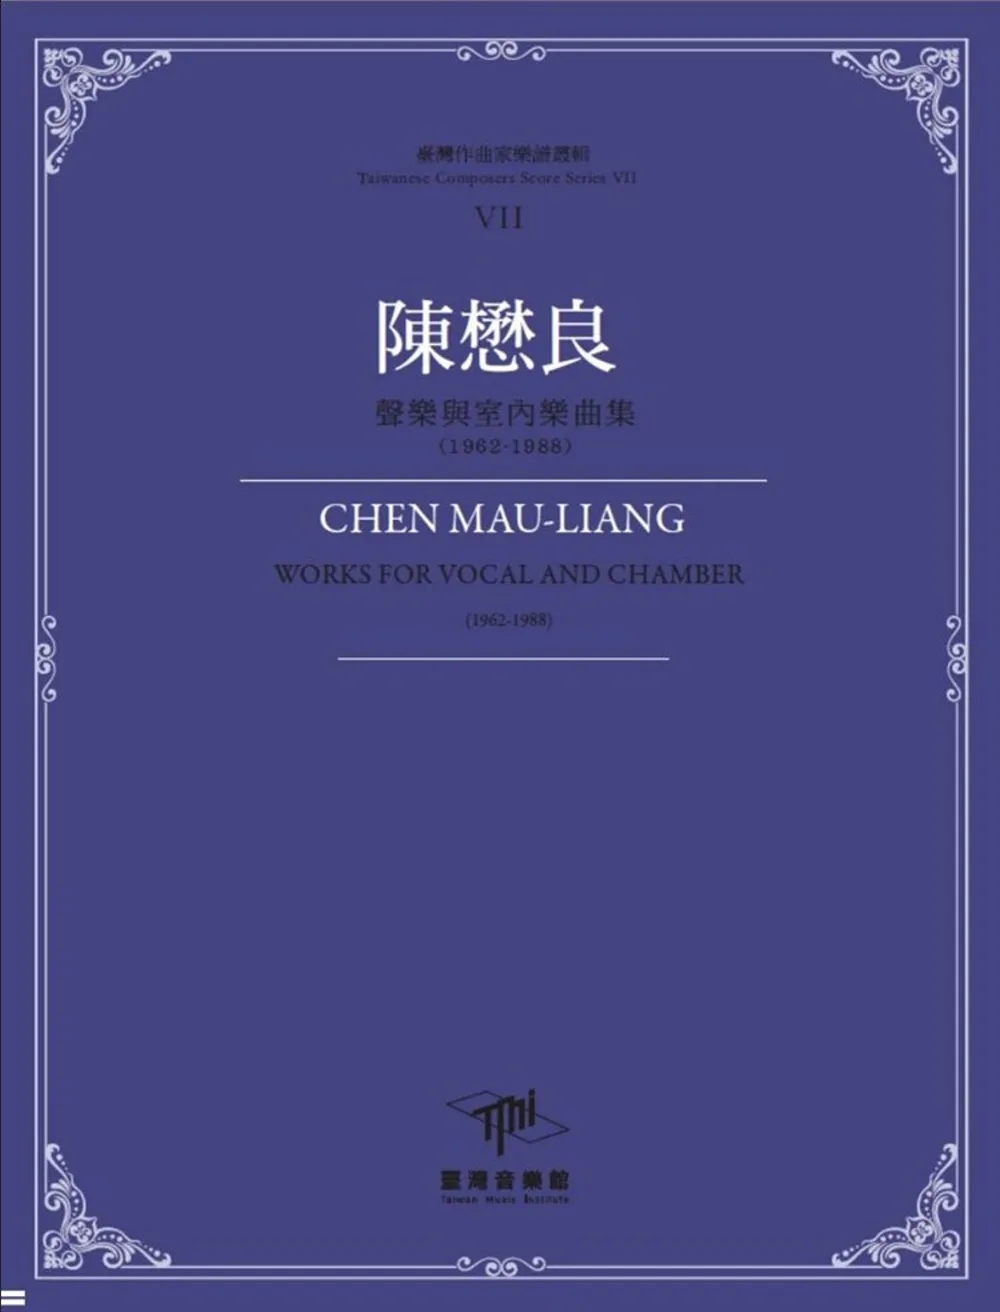 臺灣作曲家樂譜叢輯VII：陳懋良聲樂與室內樂曲集(1962-1988)